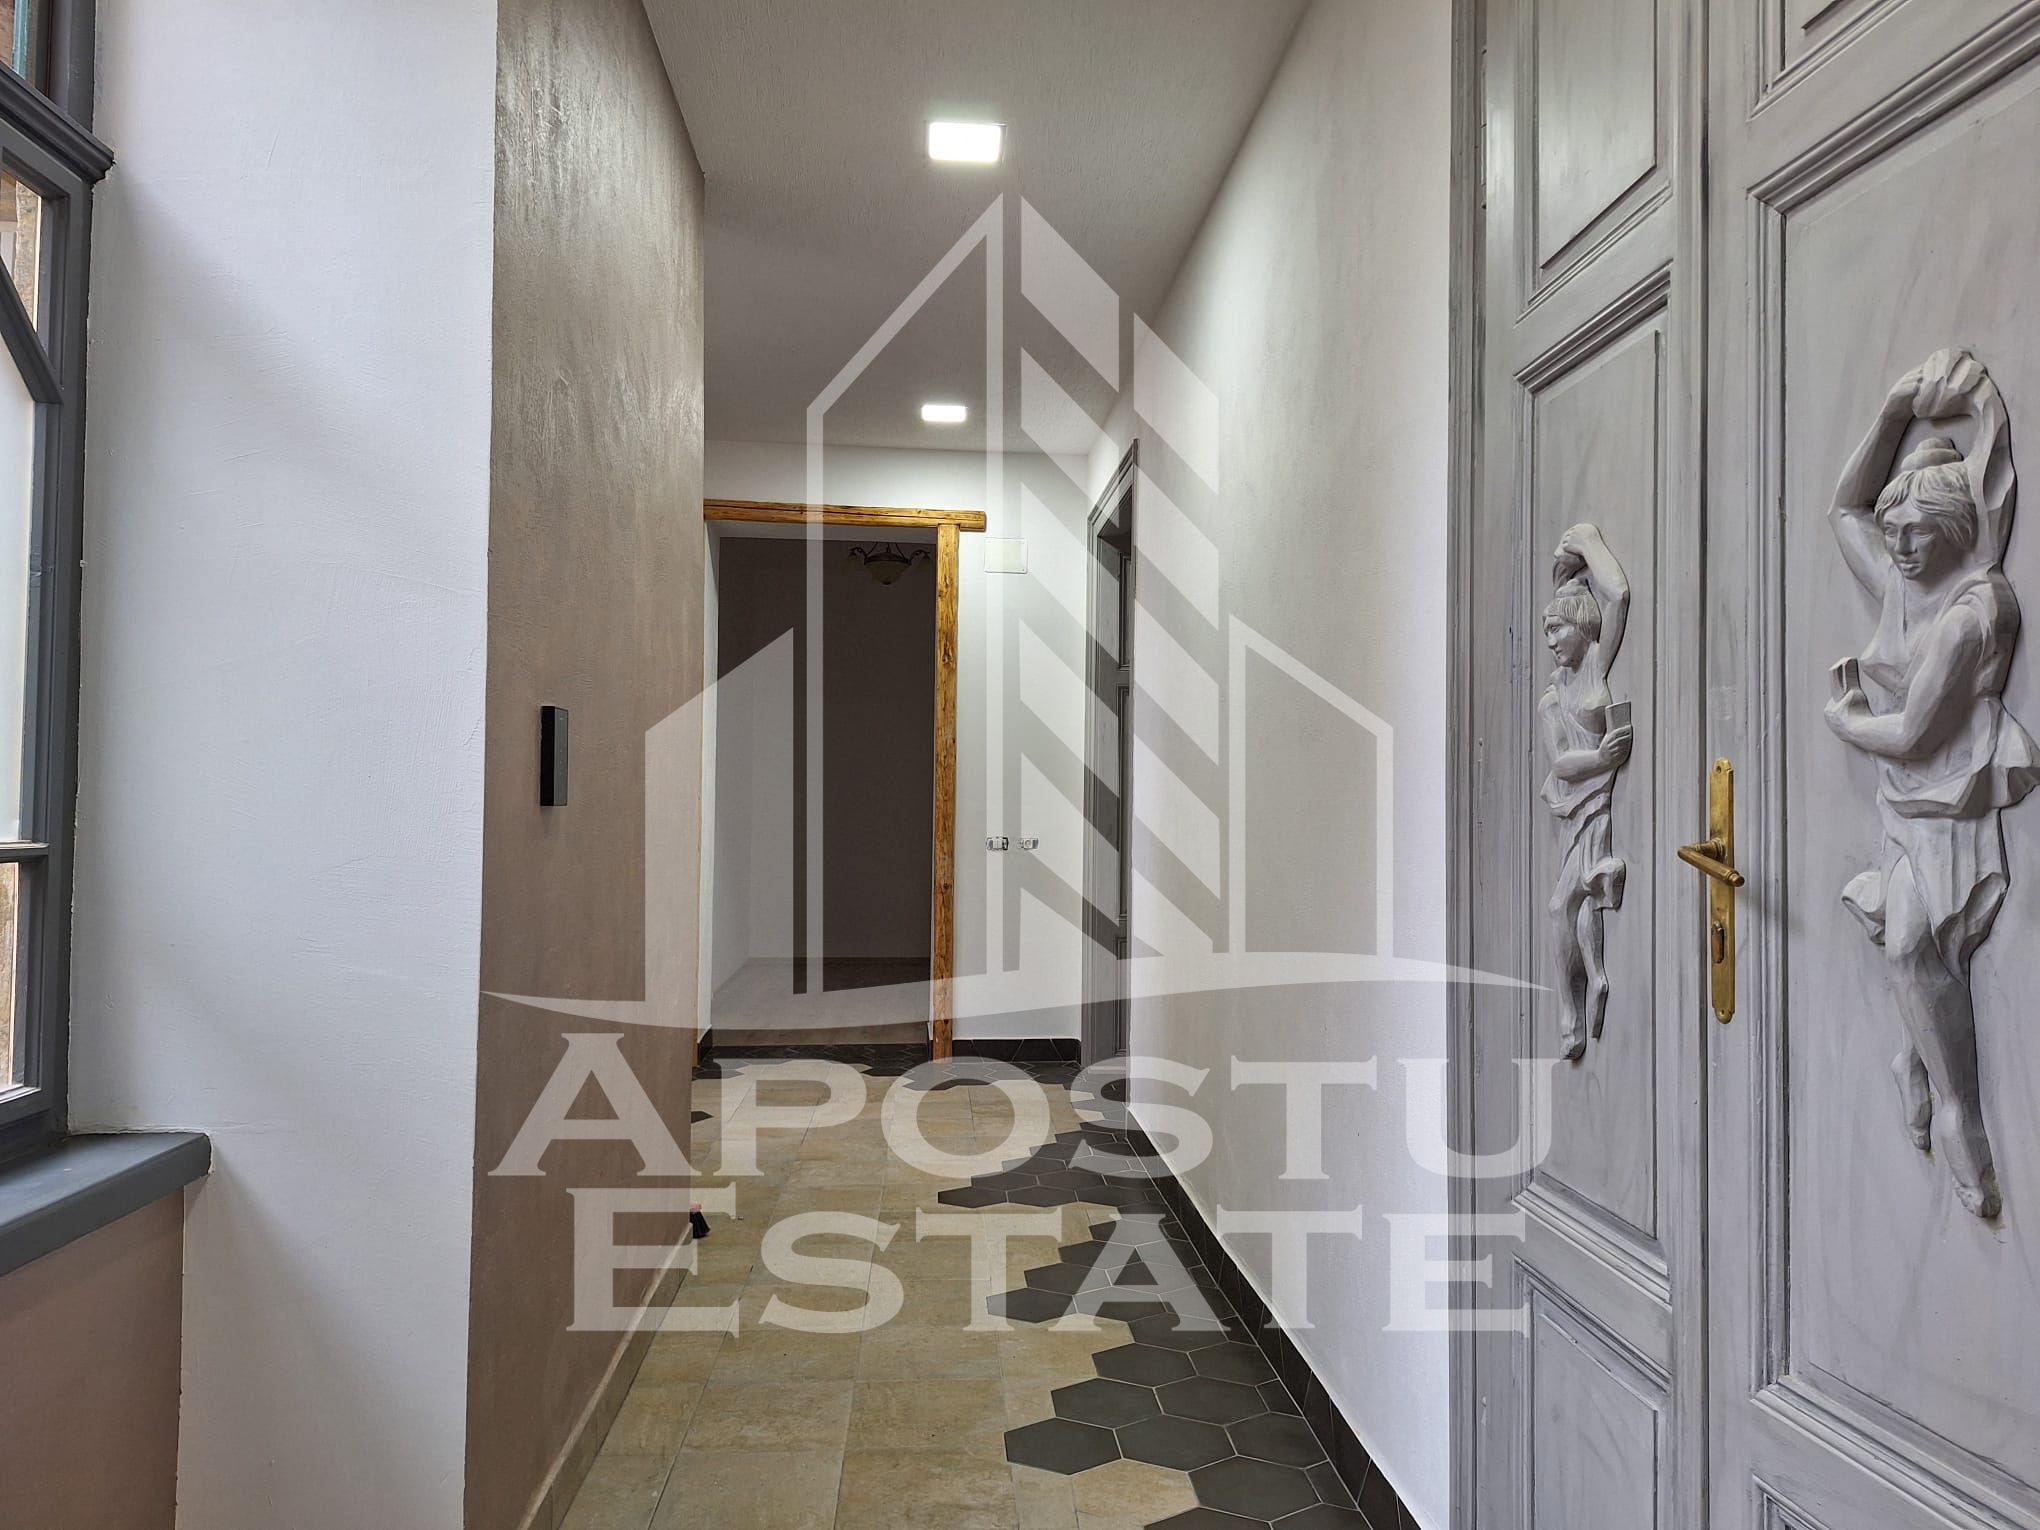 Apartament|Spatiu Comercial, renovat, luxos, 170 mp, Ultracentral